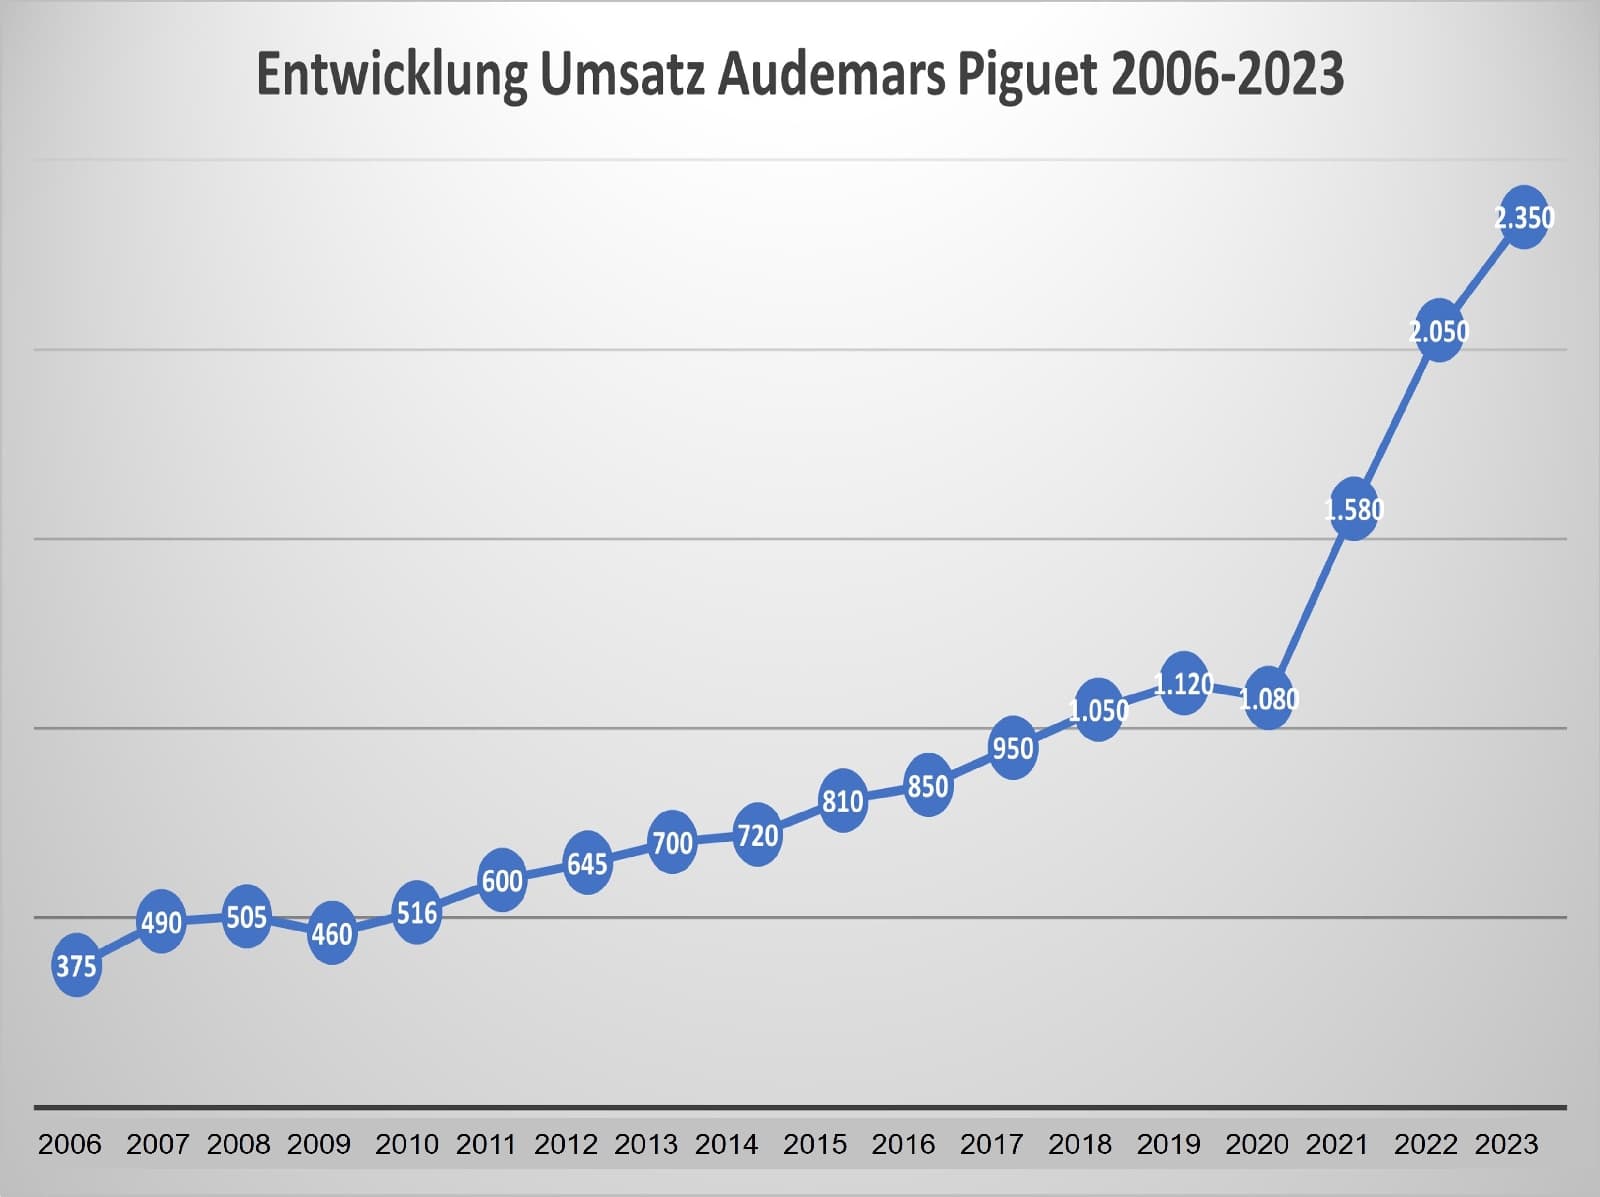 Umsatzentwicklung Audemars Piguet 2006 - 2023